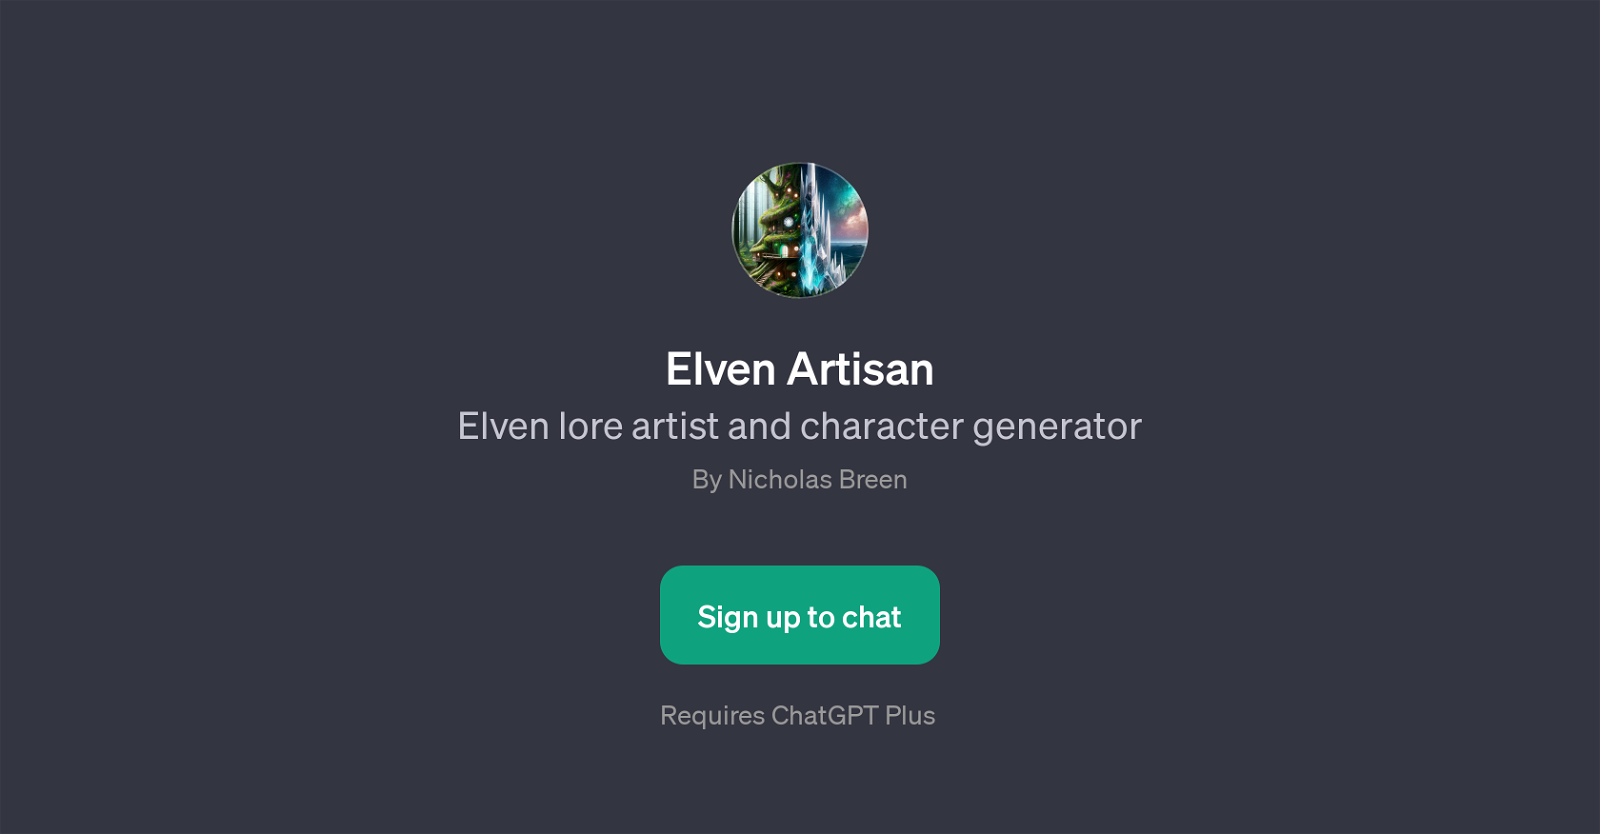 Elven Artisan website